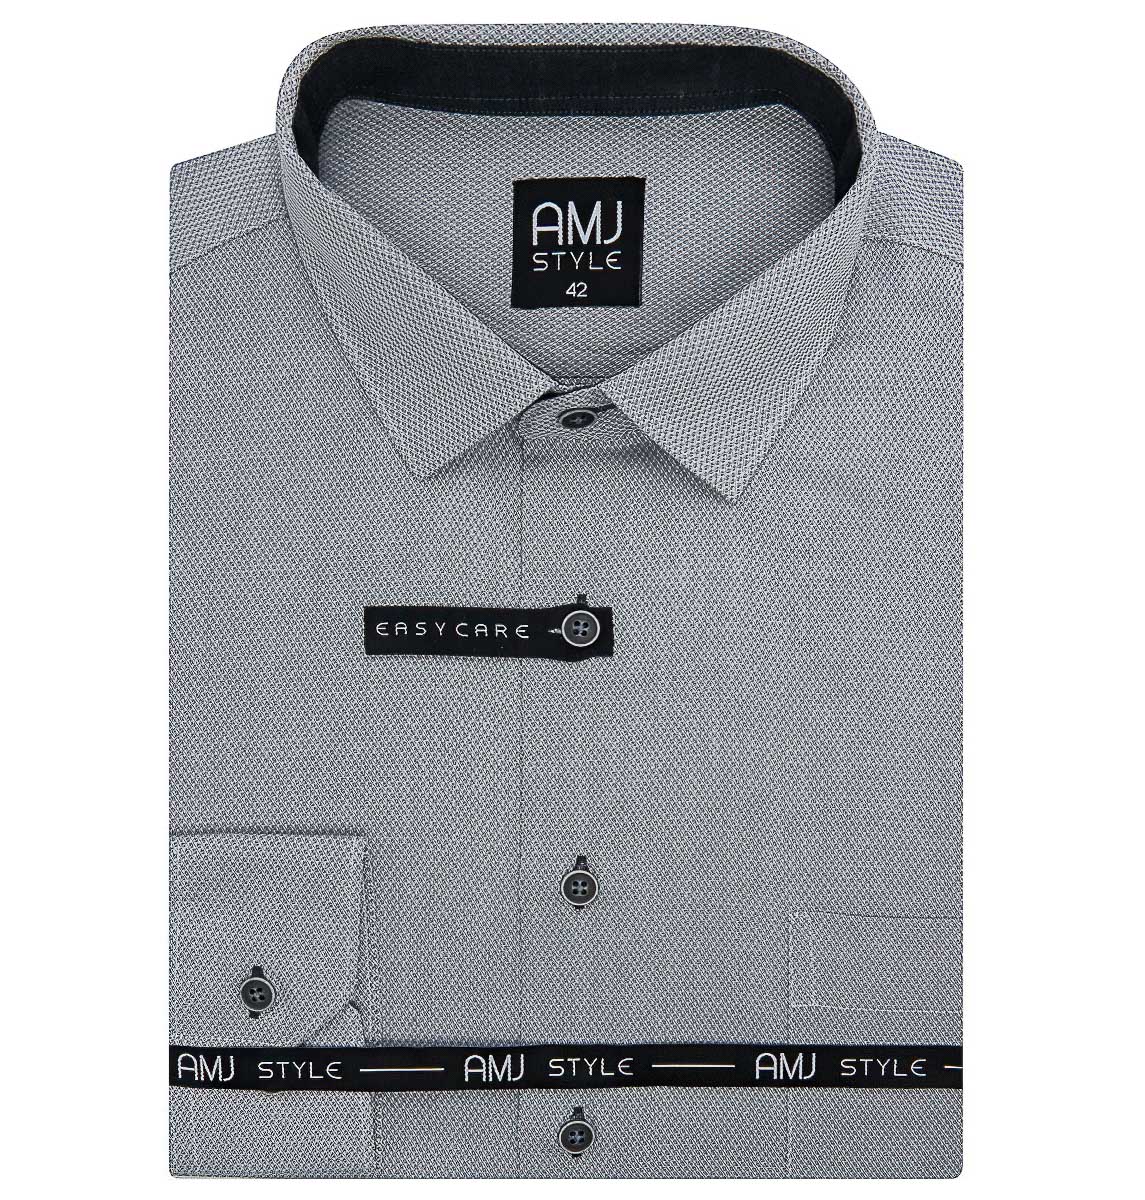 Pánská košile AMJ, šedá síťované káro VDR1101, dlouhý rukáv (regular + prodloužený slim-fit)